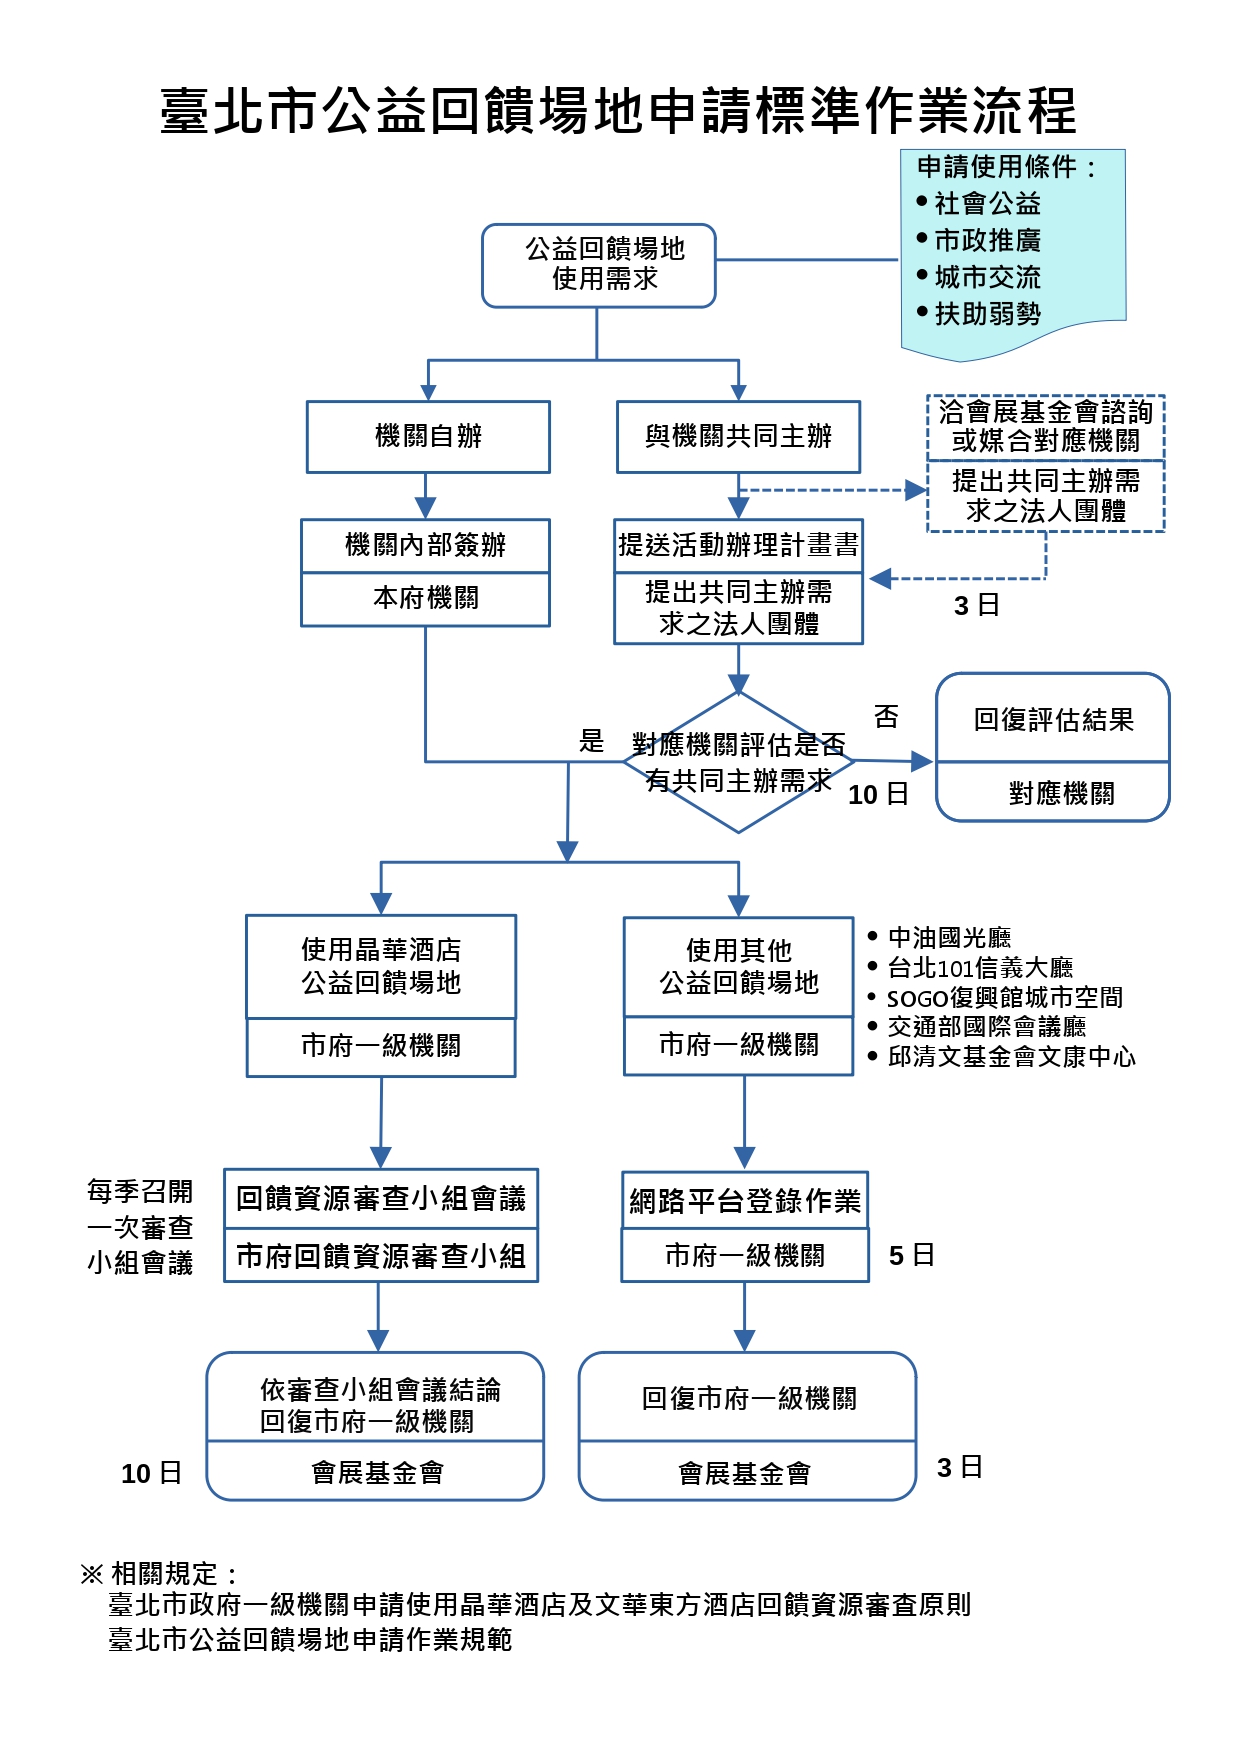 附件1-臺北市公益回饋場地申請標準作業流程